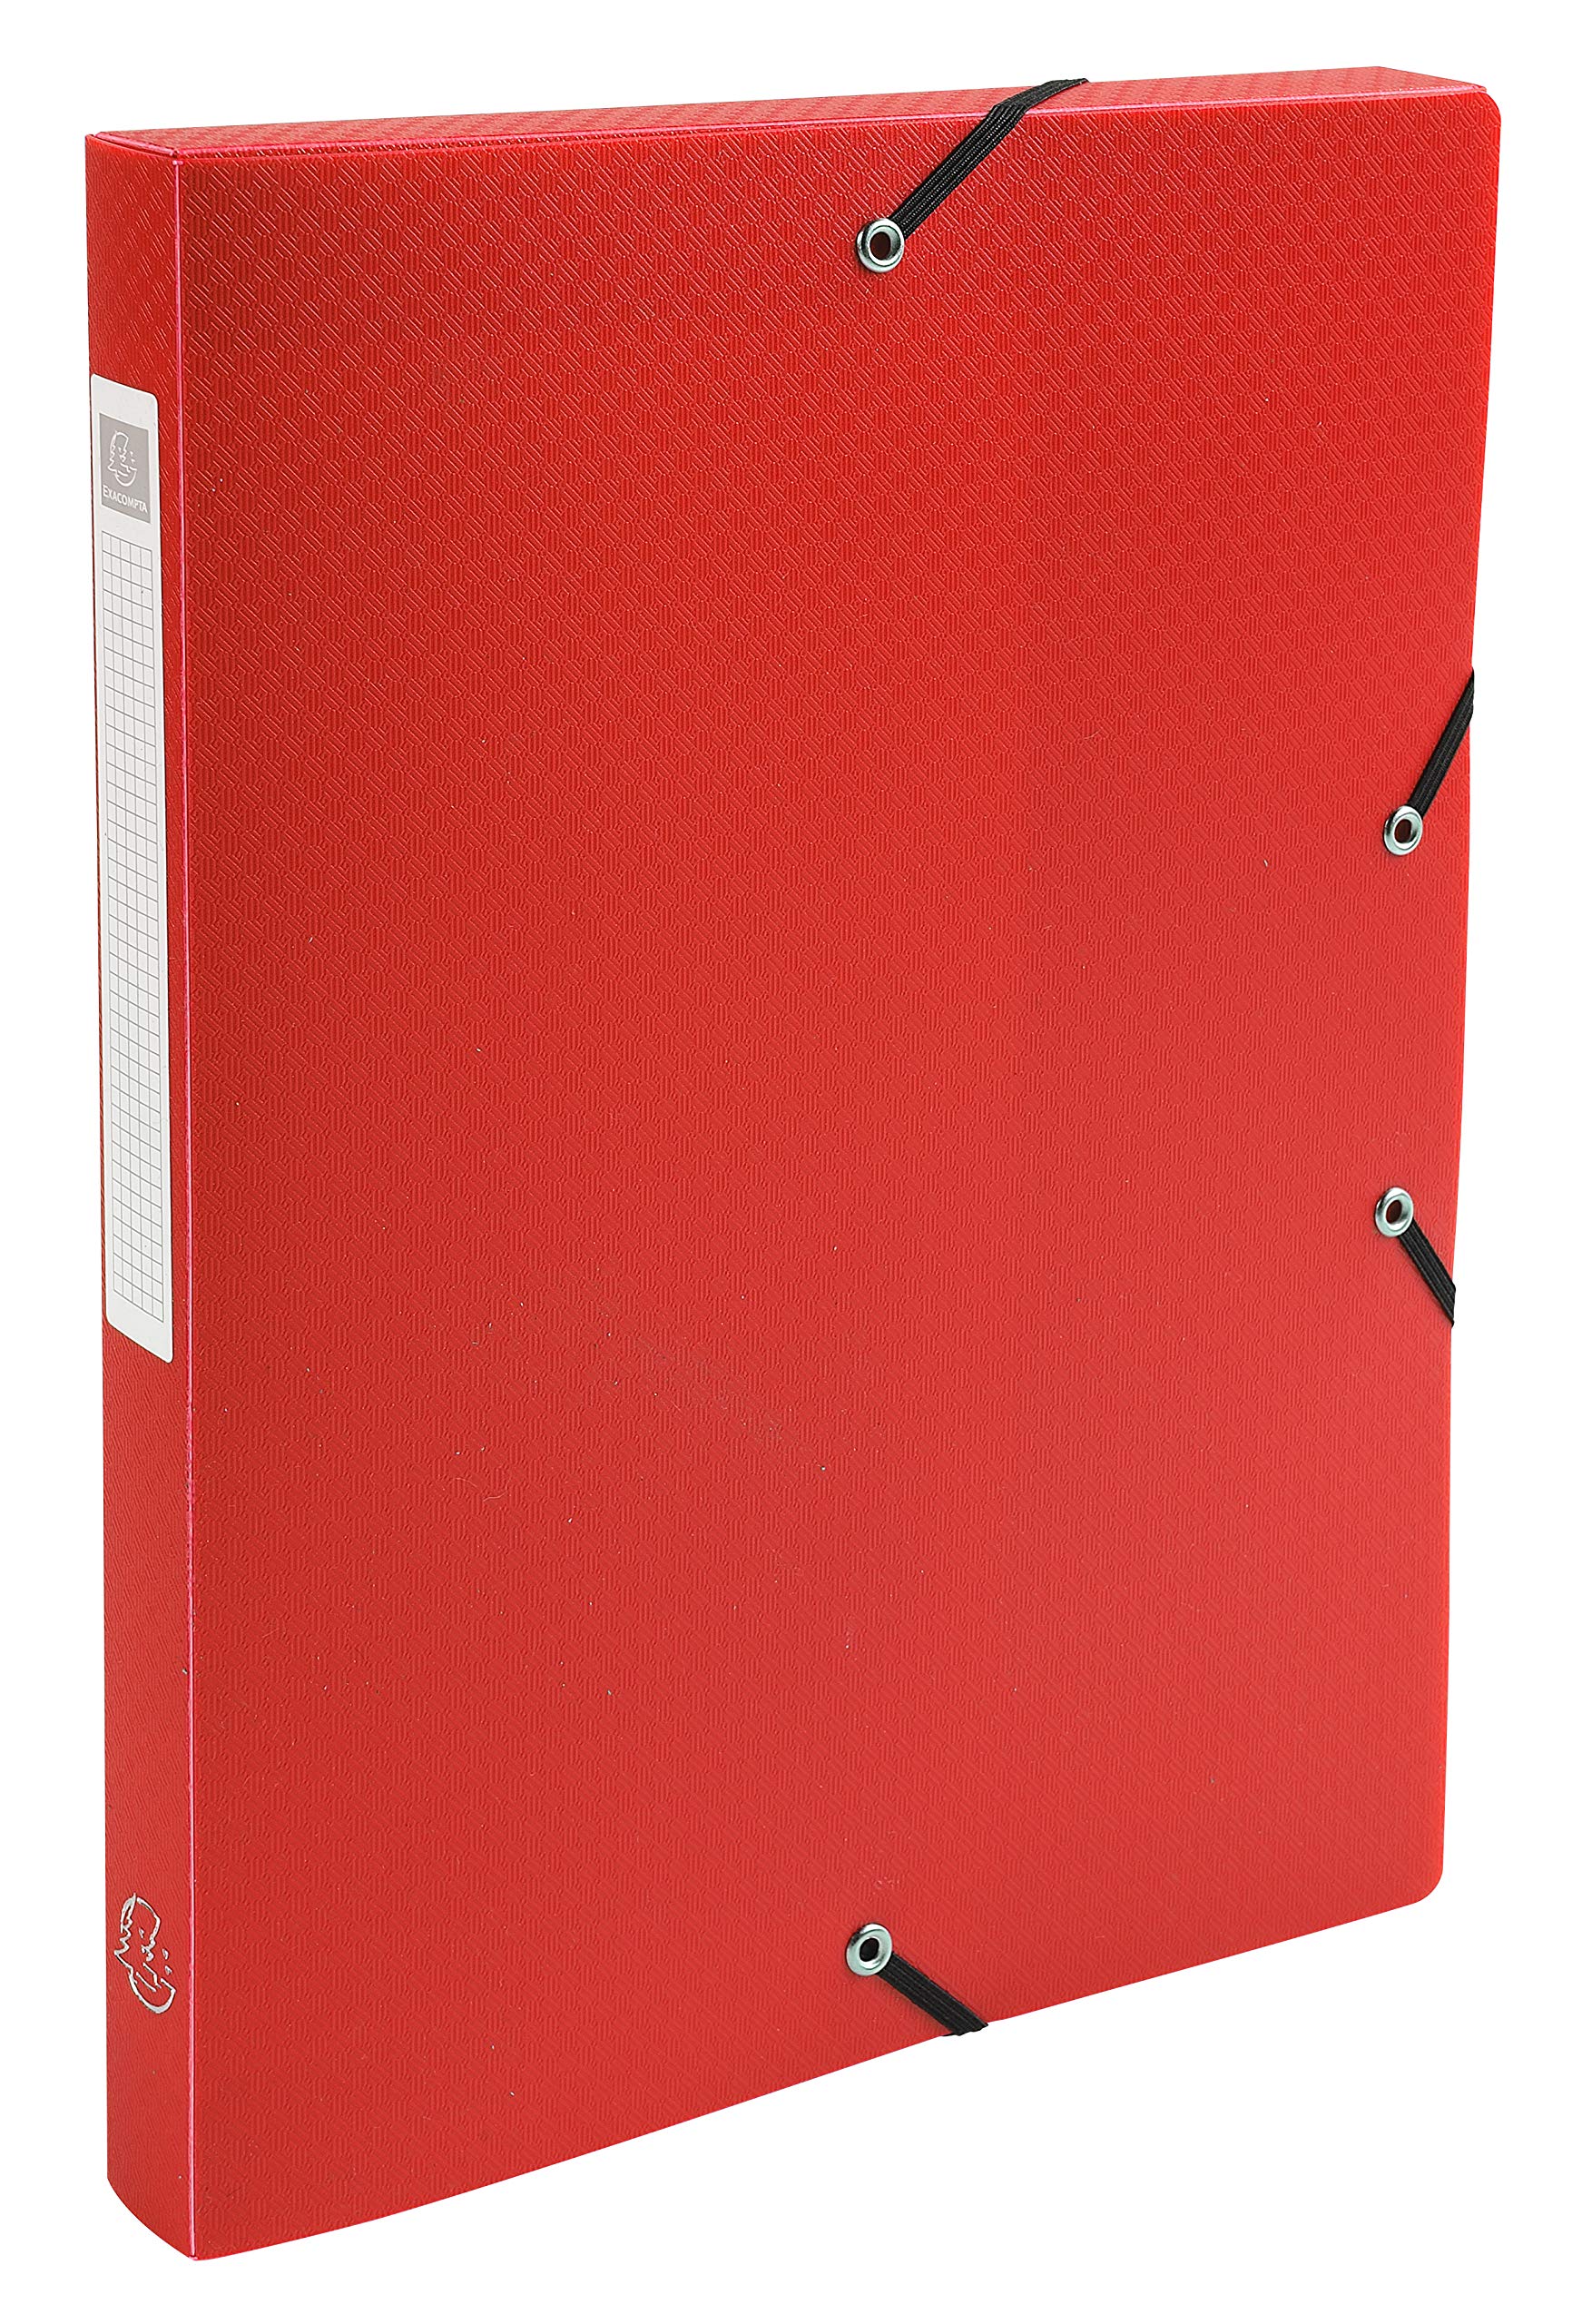 Exacompta 59685E Packung (mit 8 Archivboxen aus PP, 700µ, 24 x 32cm, ideal für Ihre Dokumente in Format DIN A4, Rücken 25mm) rot, 8 Stück